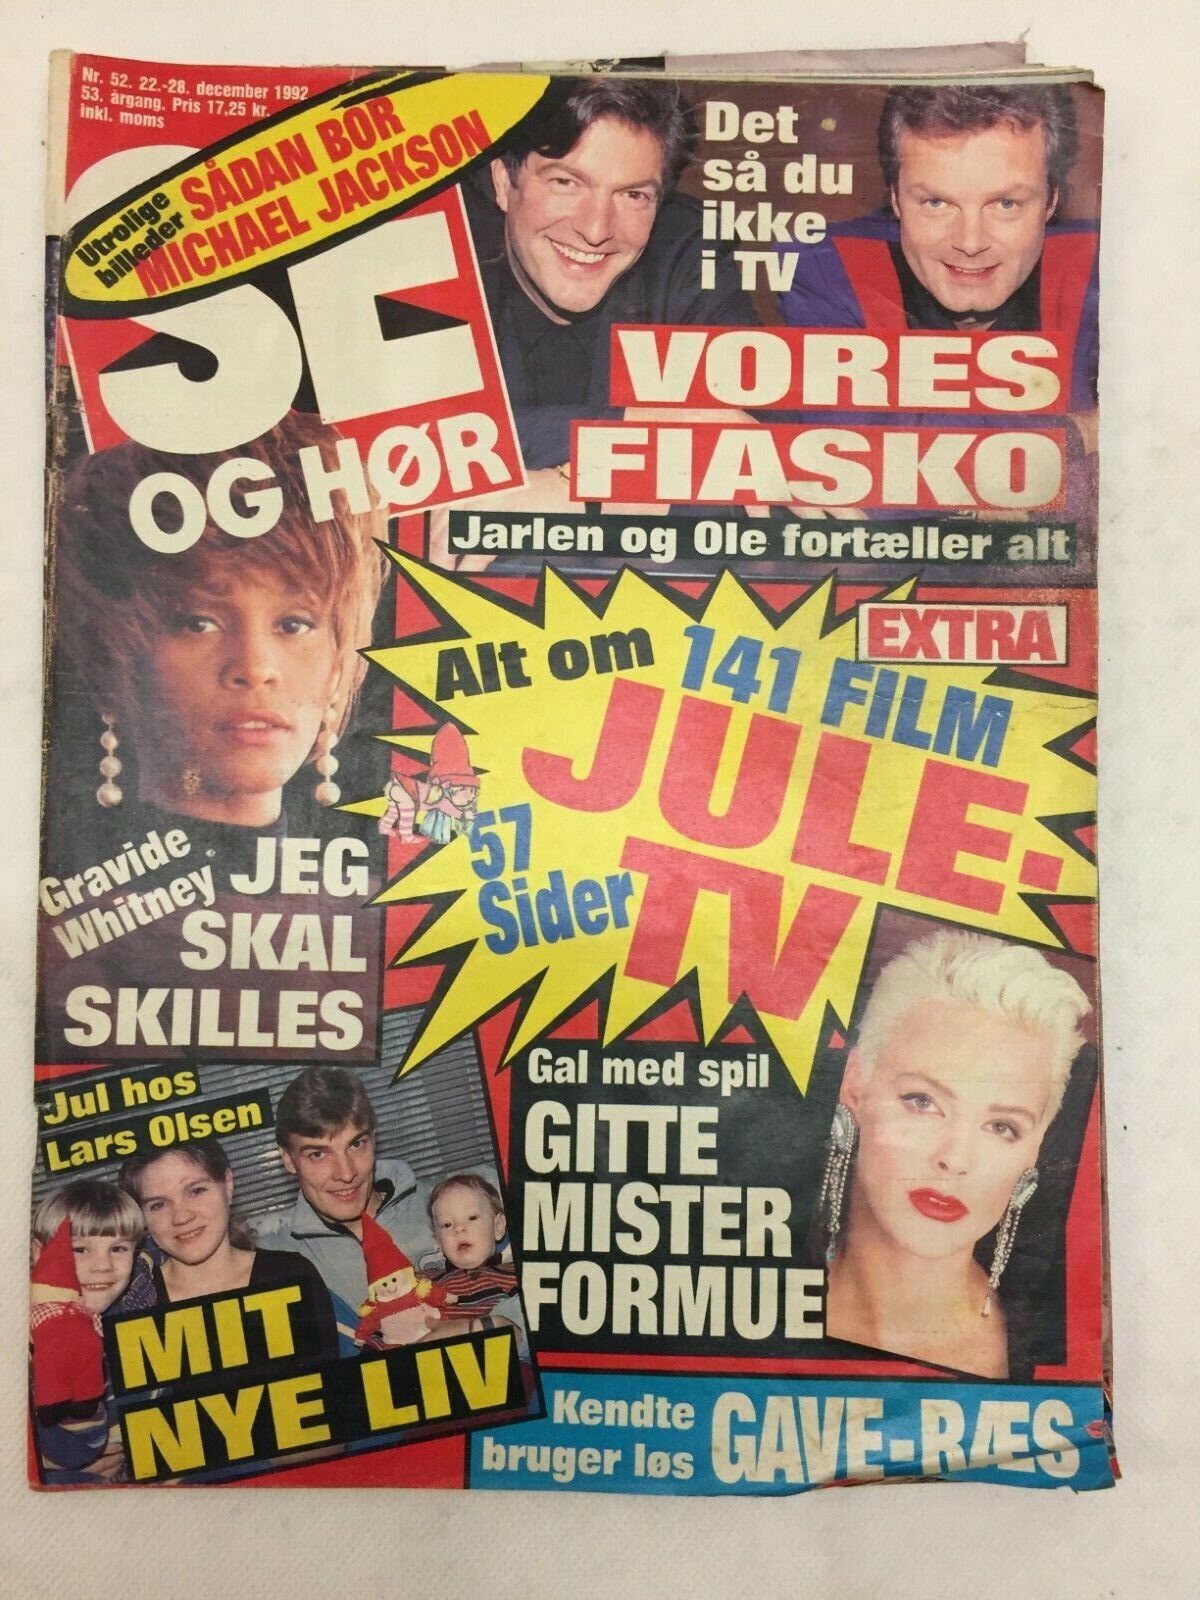 Whitney elizabeth houston divorce rumors vtg danish magazine 1992 "se og hoer"